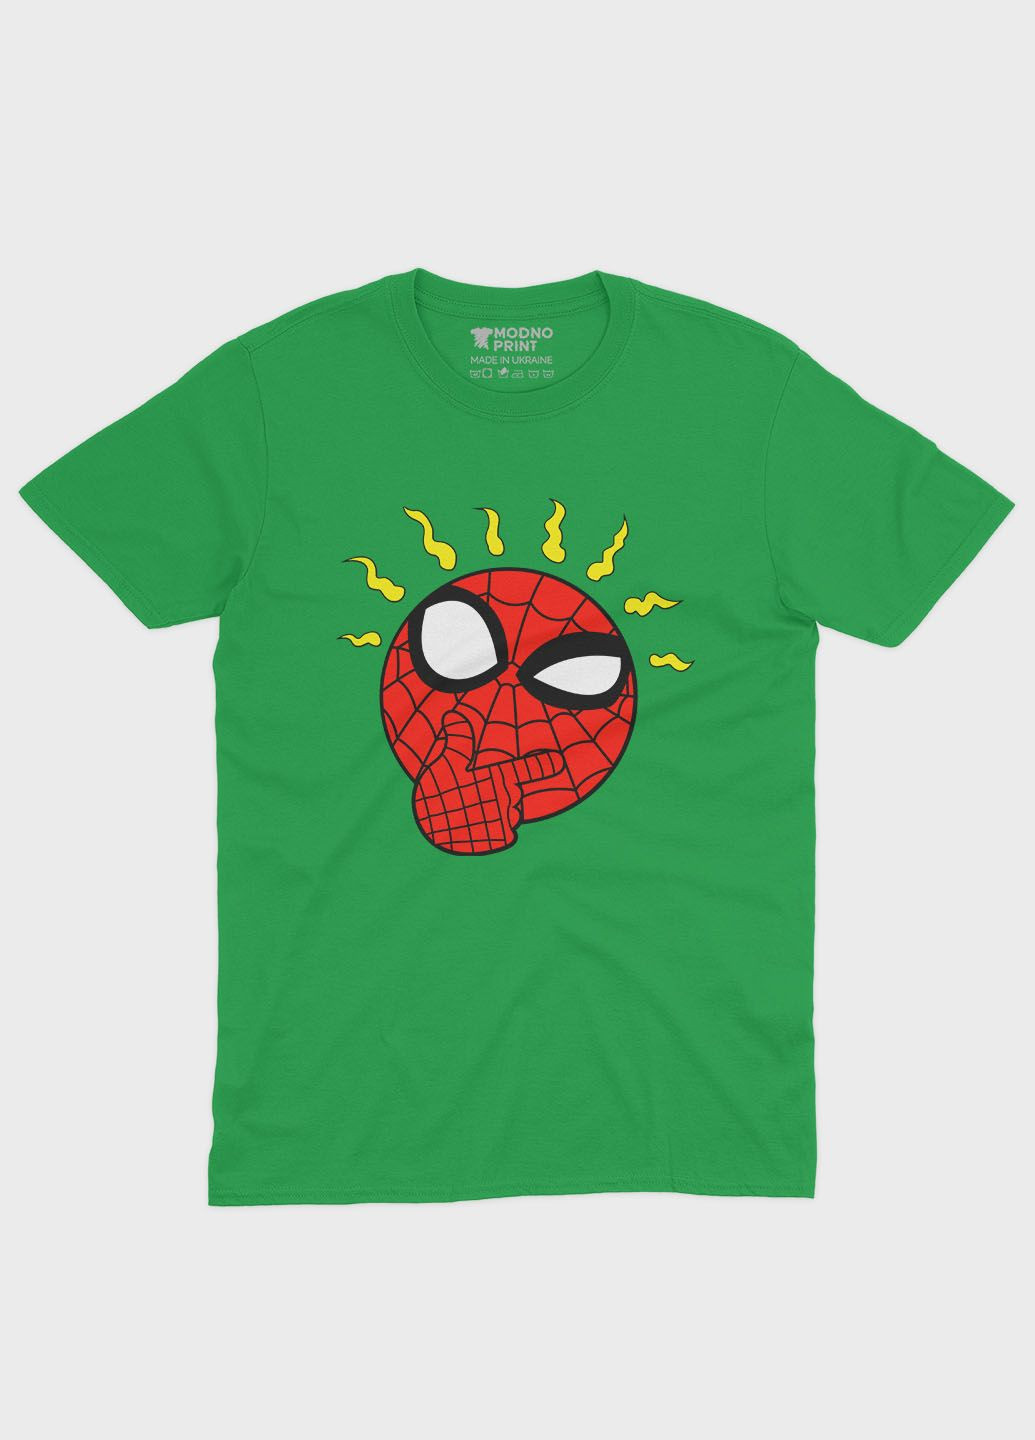 Зеленая демисезонная футболка для мальчика с принтом супергероя - человек-паук (ts001-1-keg-006-014-112-b) Modno